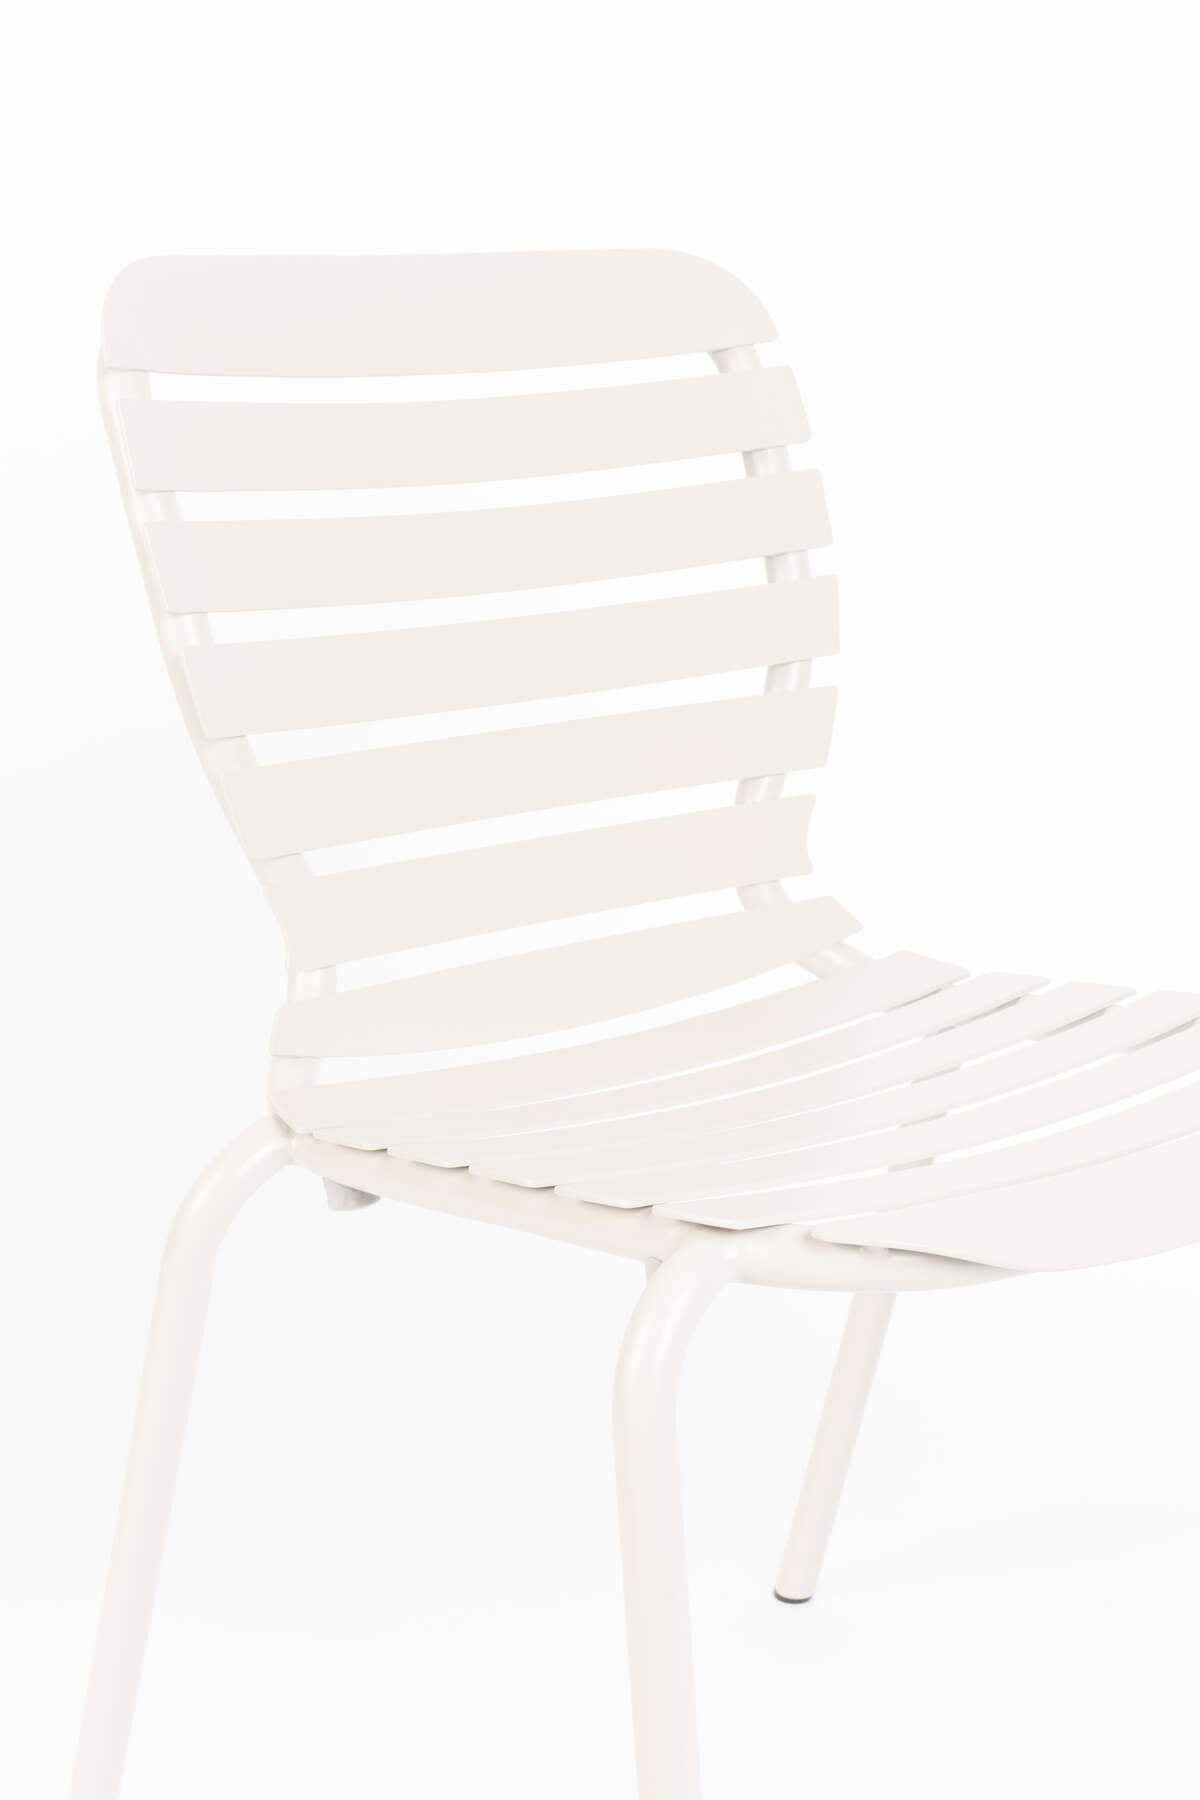 Garden chair VONDEL white, Zuiver, Eye on Design